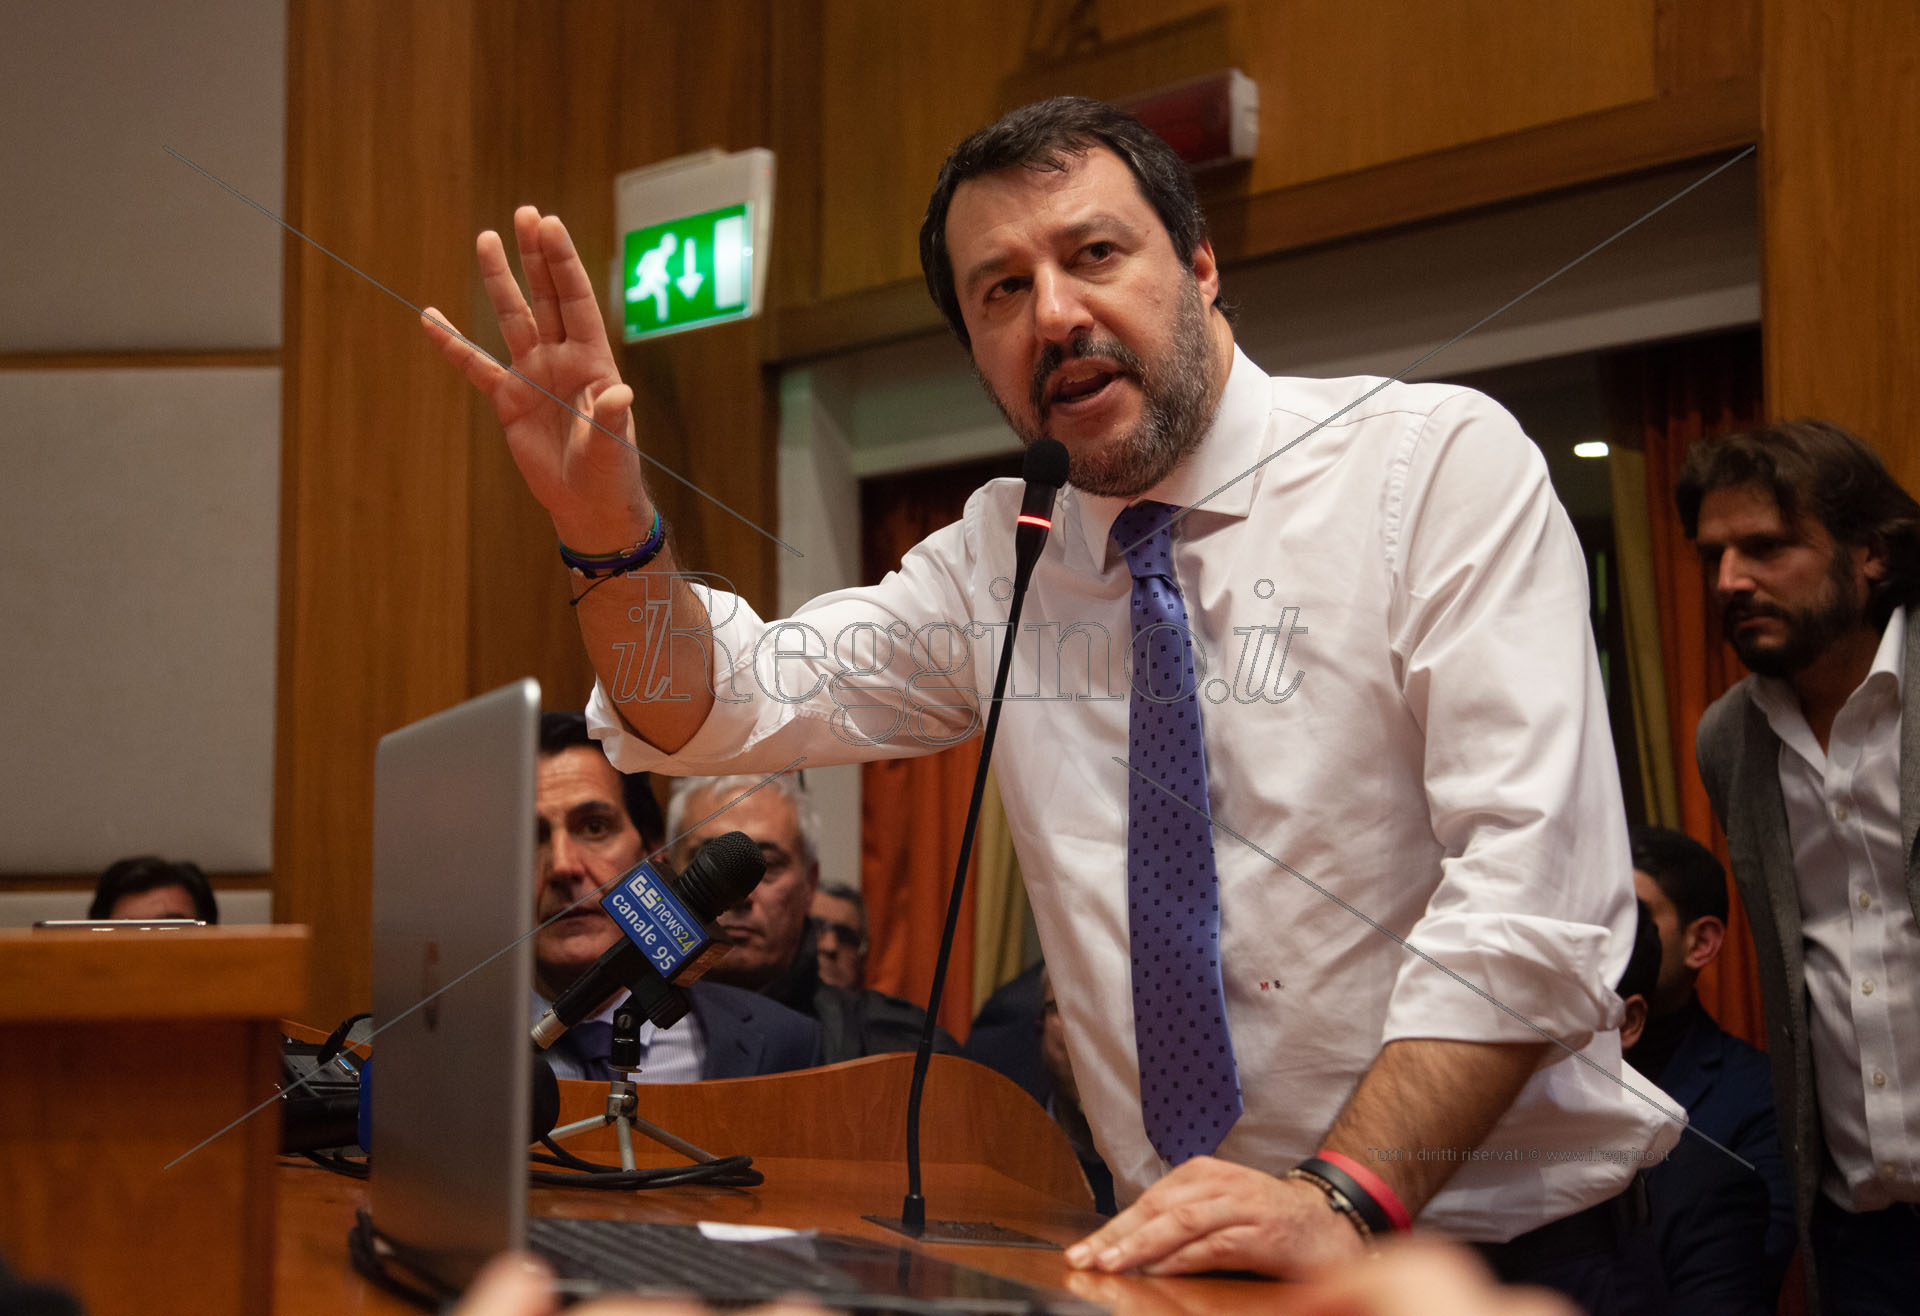 Elezioni, Salvini torna a parlare del sindaco del Ponte. E Fi schiuma rabbia